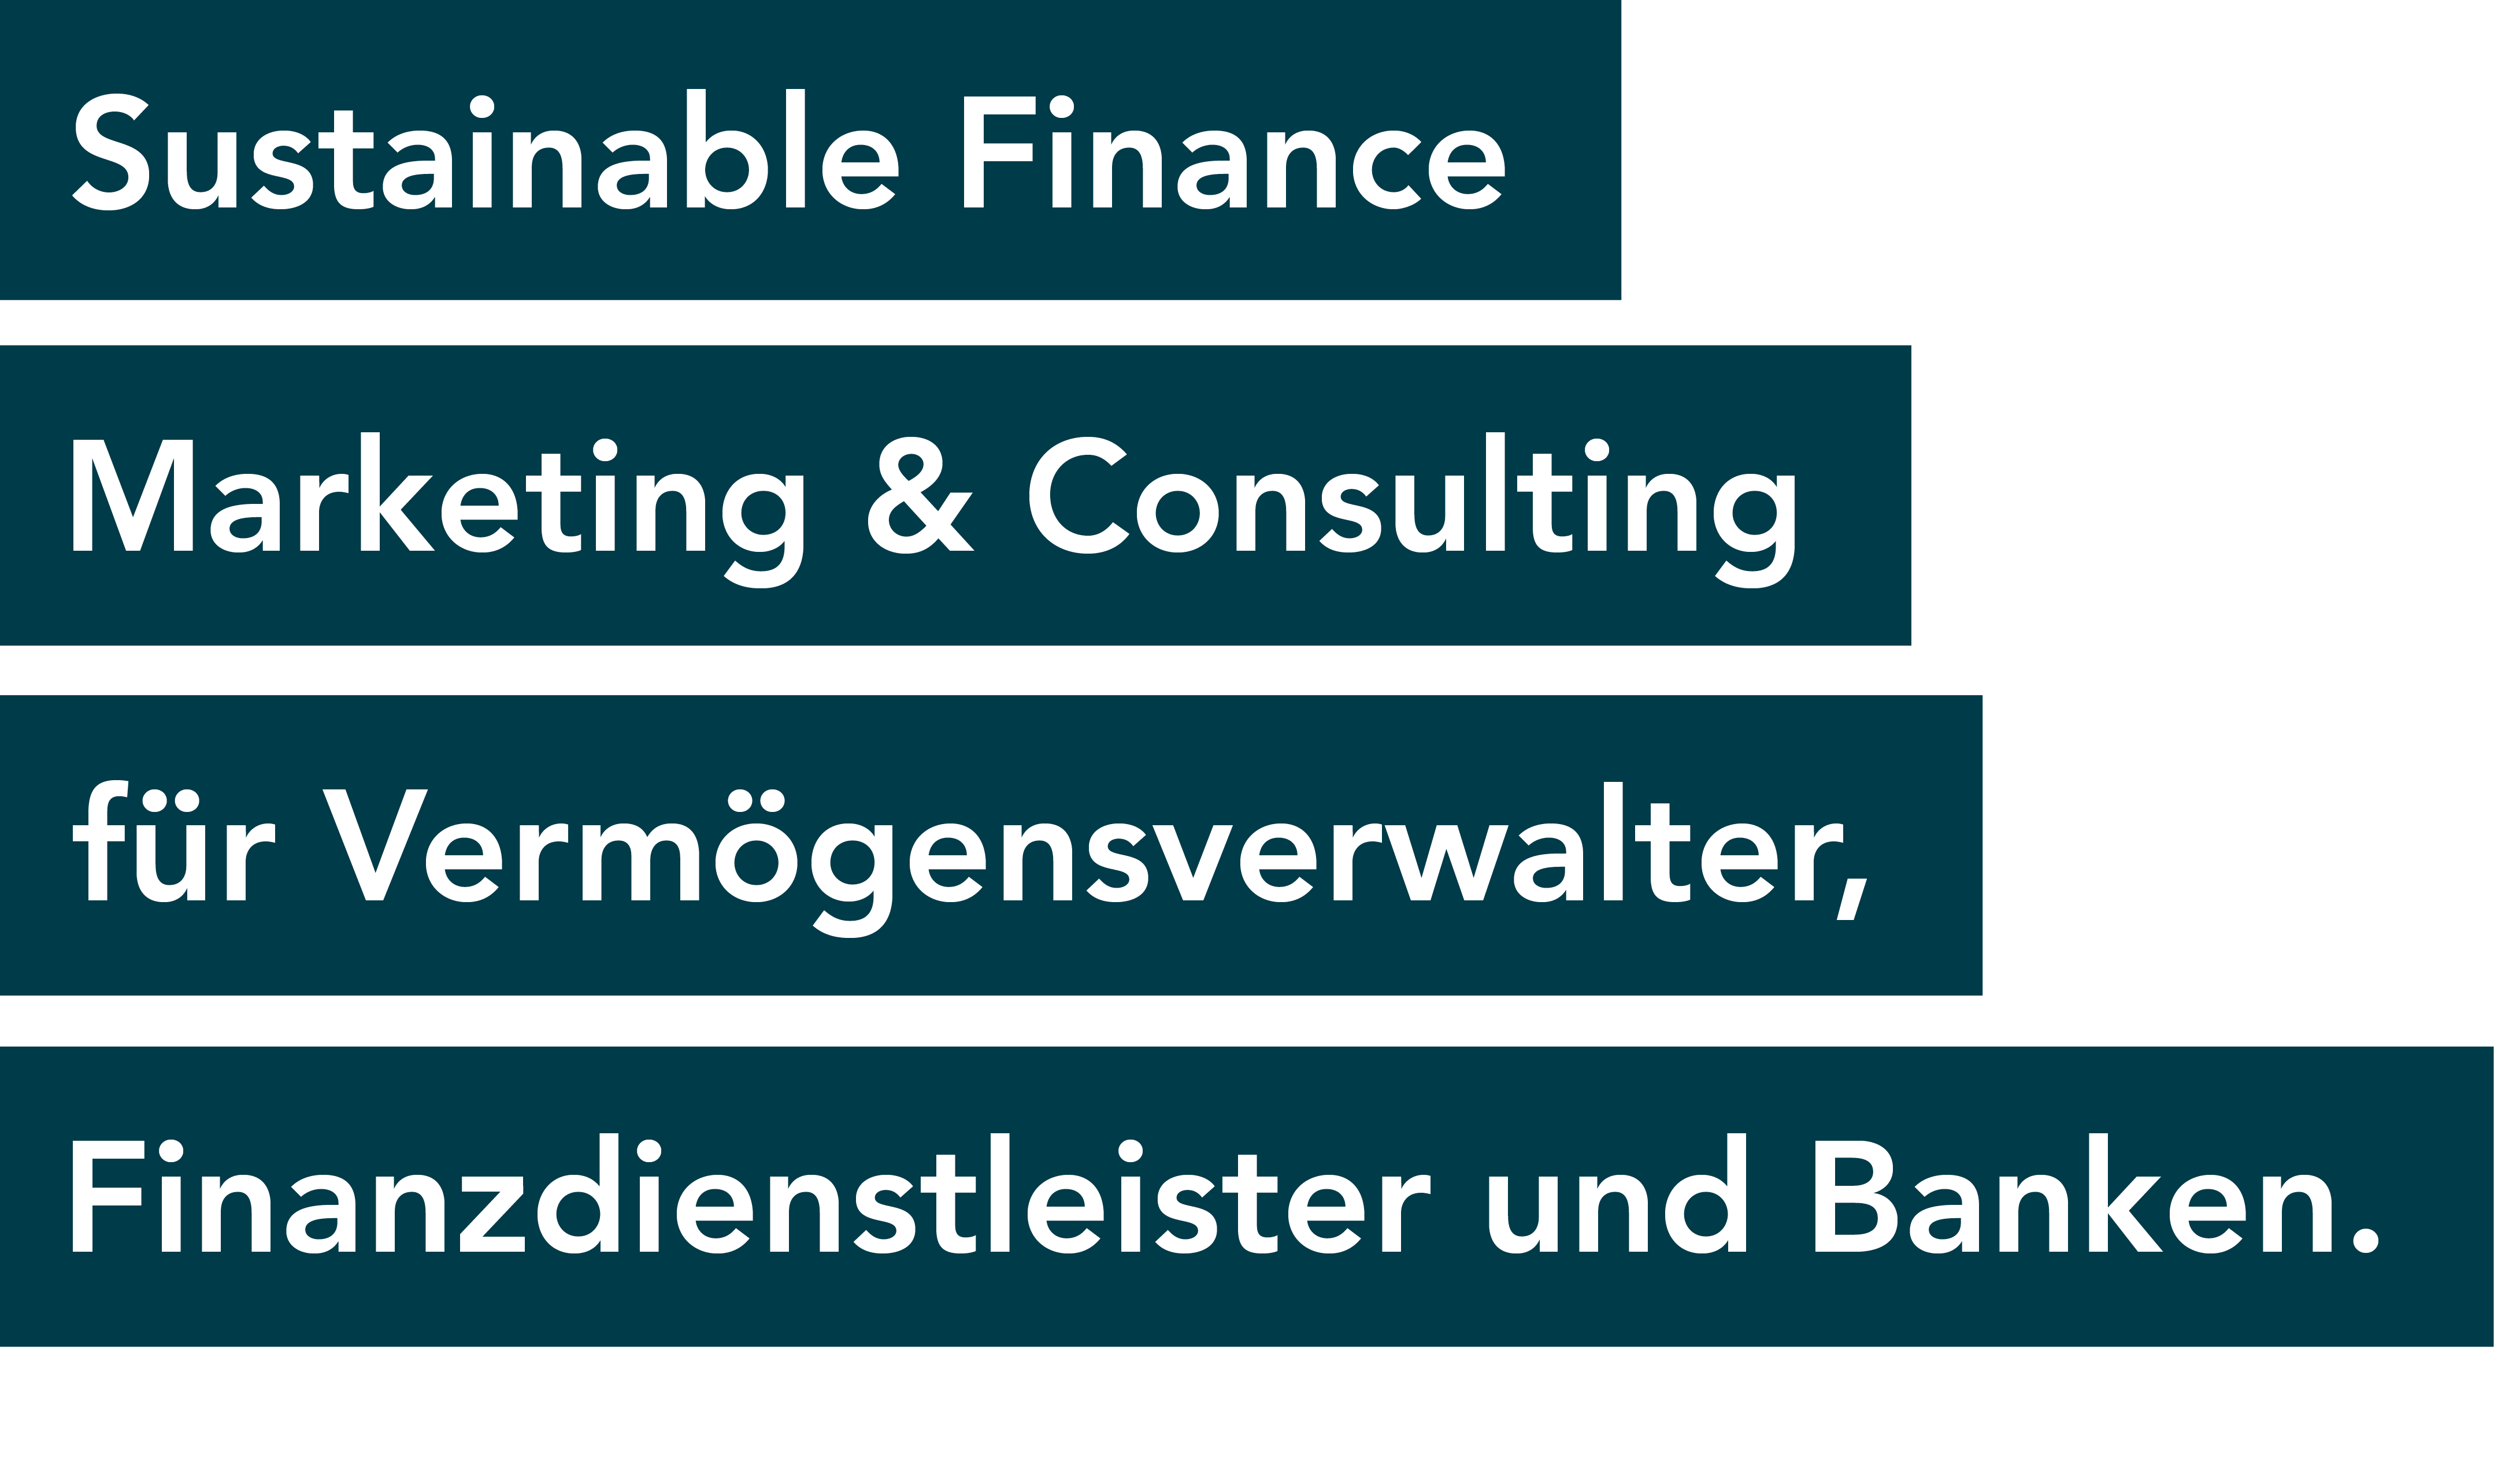 Sustainable Finance Marketing & Consulting
für Vermögensverwalter, Finanzdienstleister und Banken.